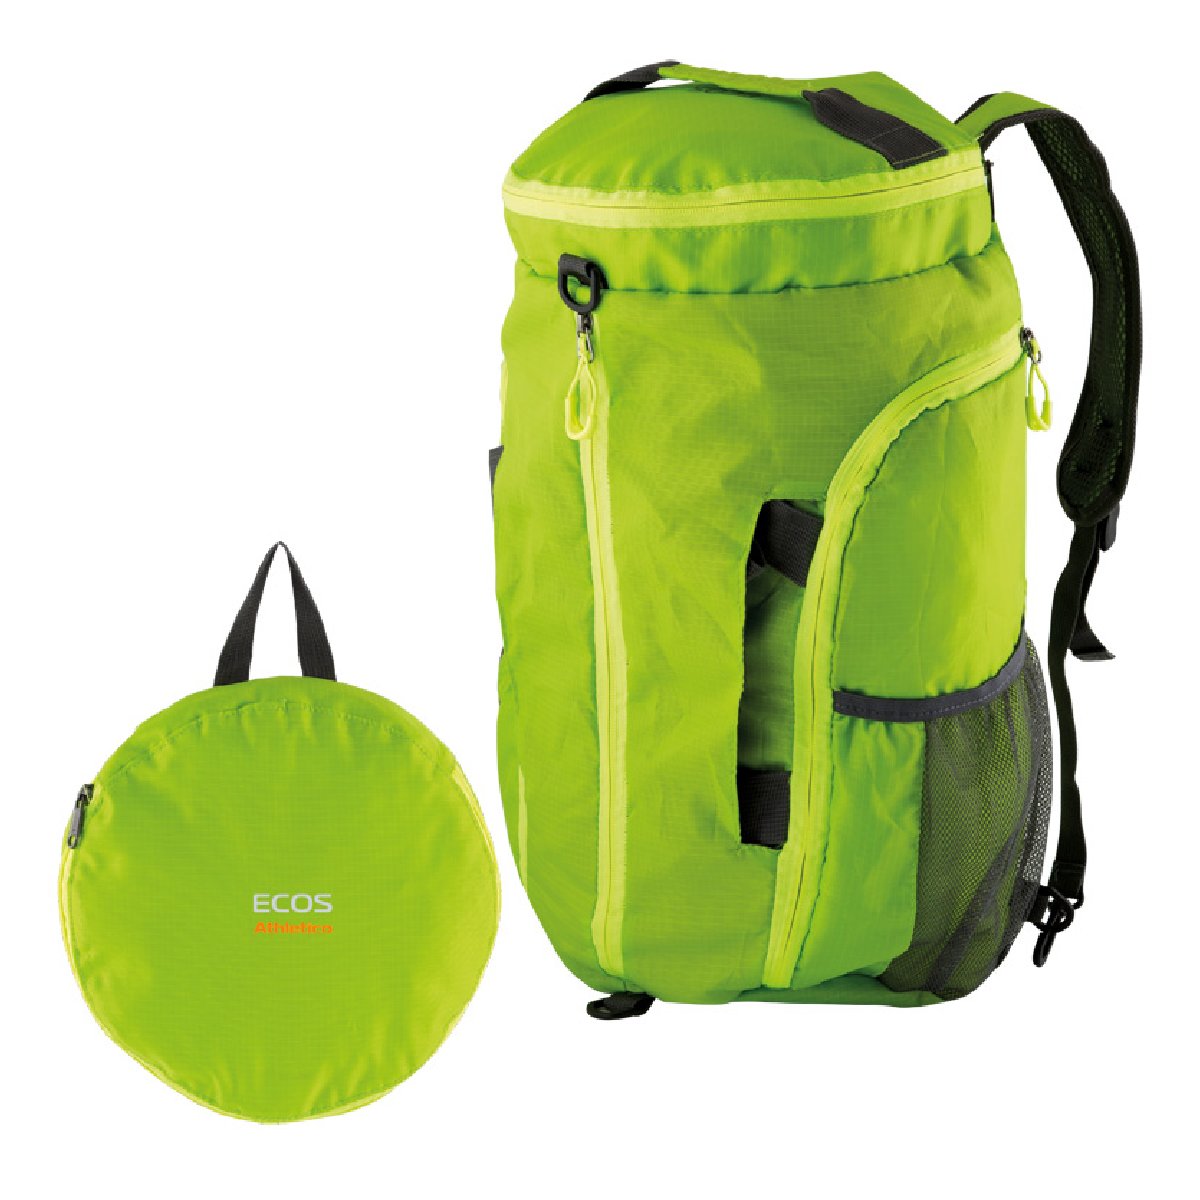 Сумка-рюкзак Athletico,зеленый 20 л (006639)